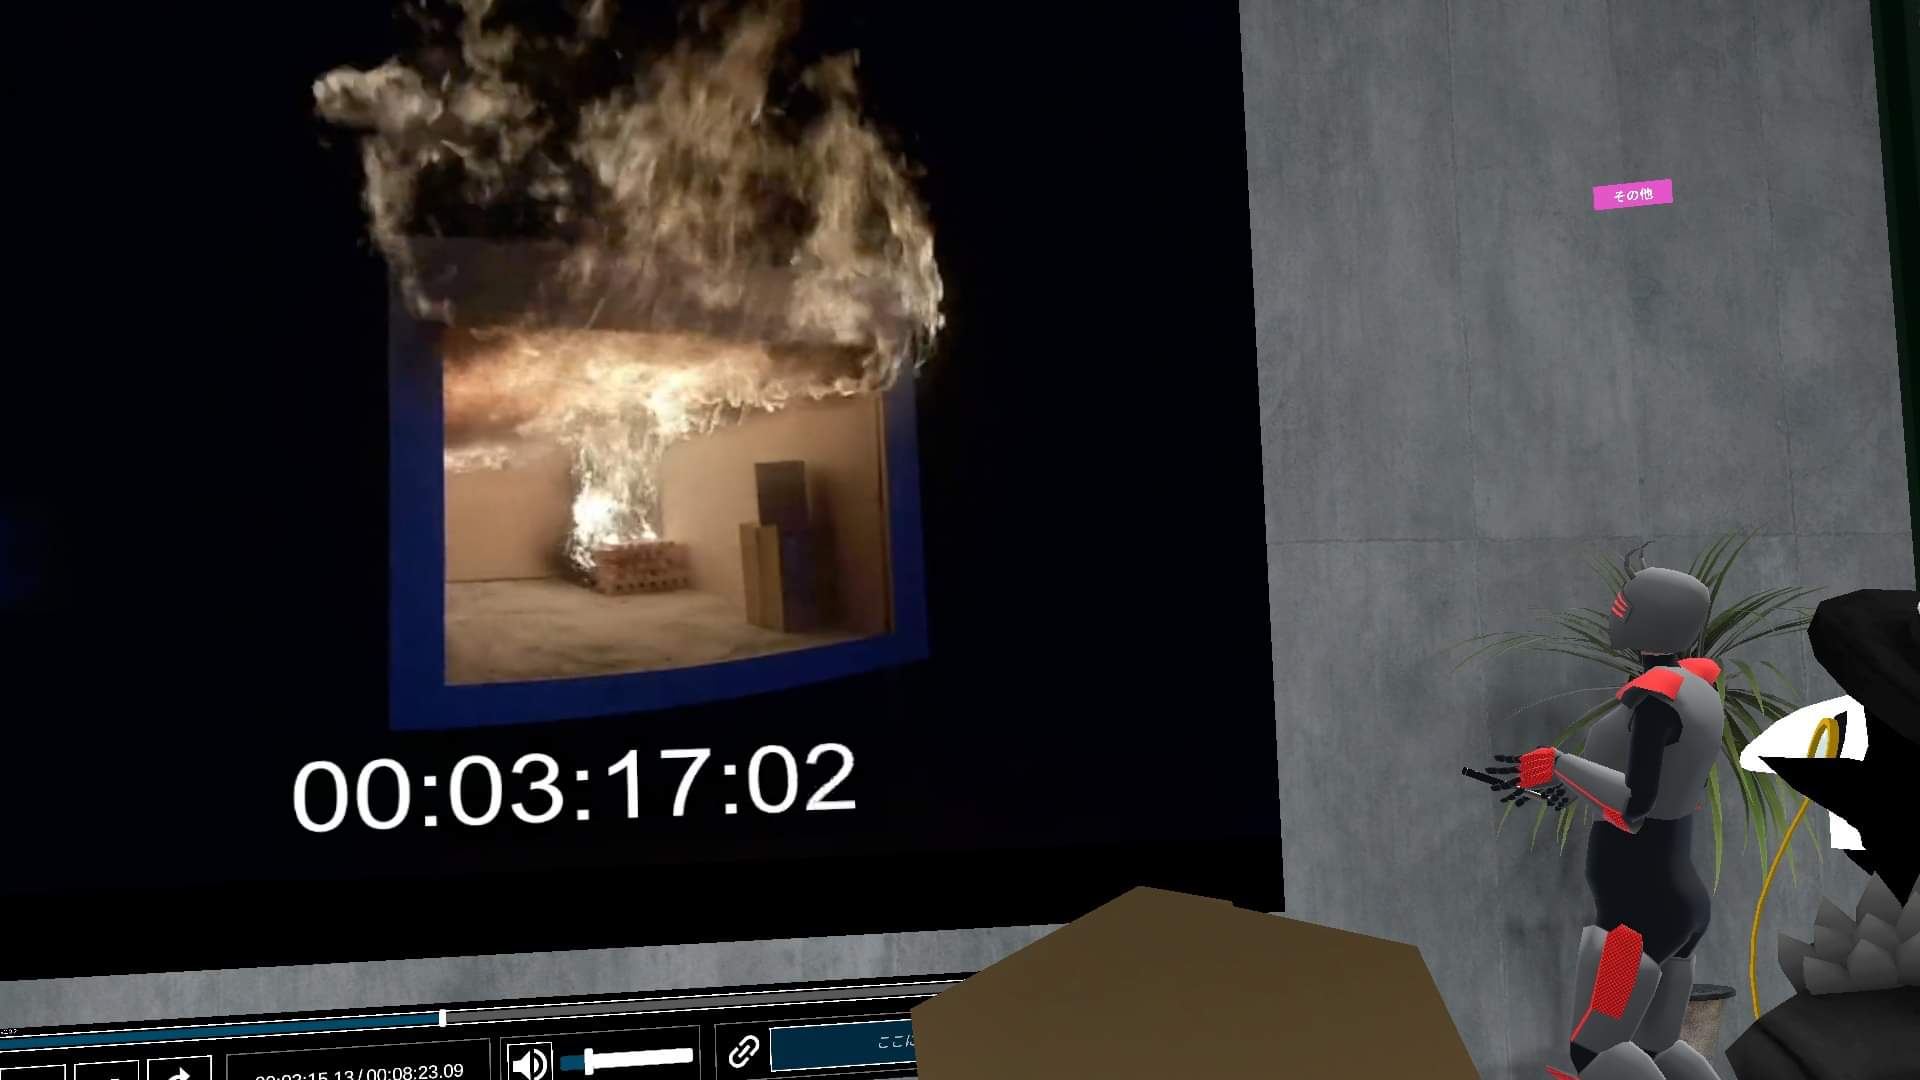 立体視映像で撮影された火災実験